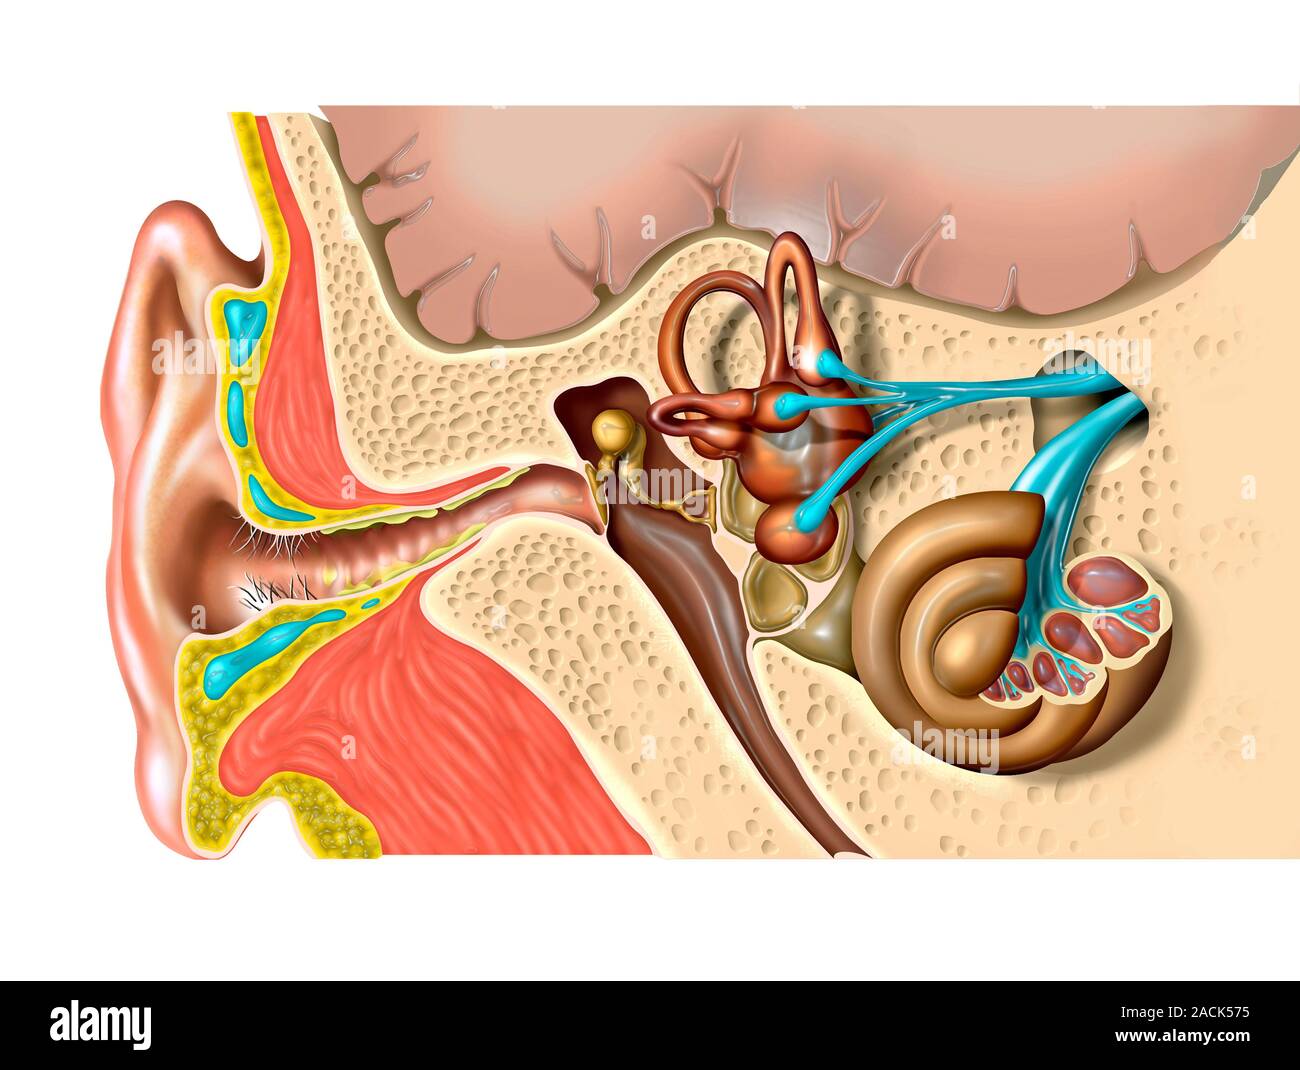 Anatomie de l'oreille humaine. L'oeuvre de l'ordinateur de la structure de  l'oreille humaine, montrant l'oreille externe (à gauche), de l'oreille  moyenne et l'oreille interne (à droite). Le tympan (t Photo Stock -